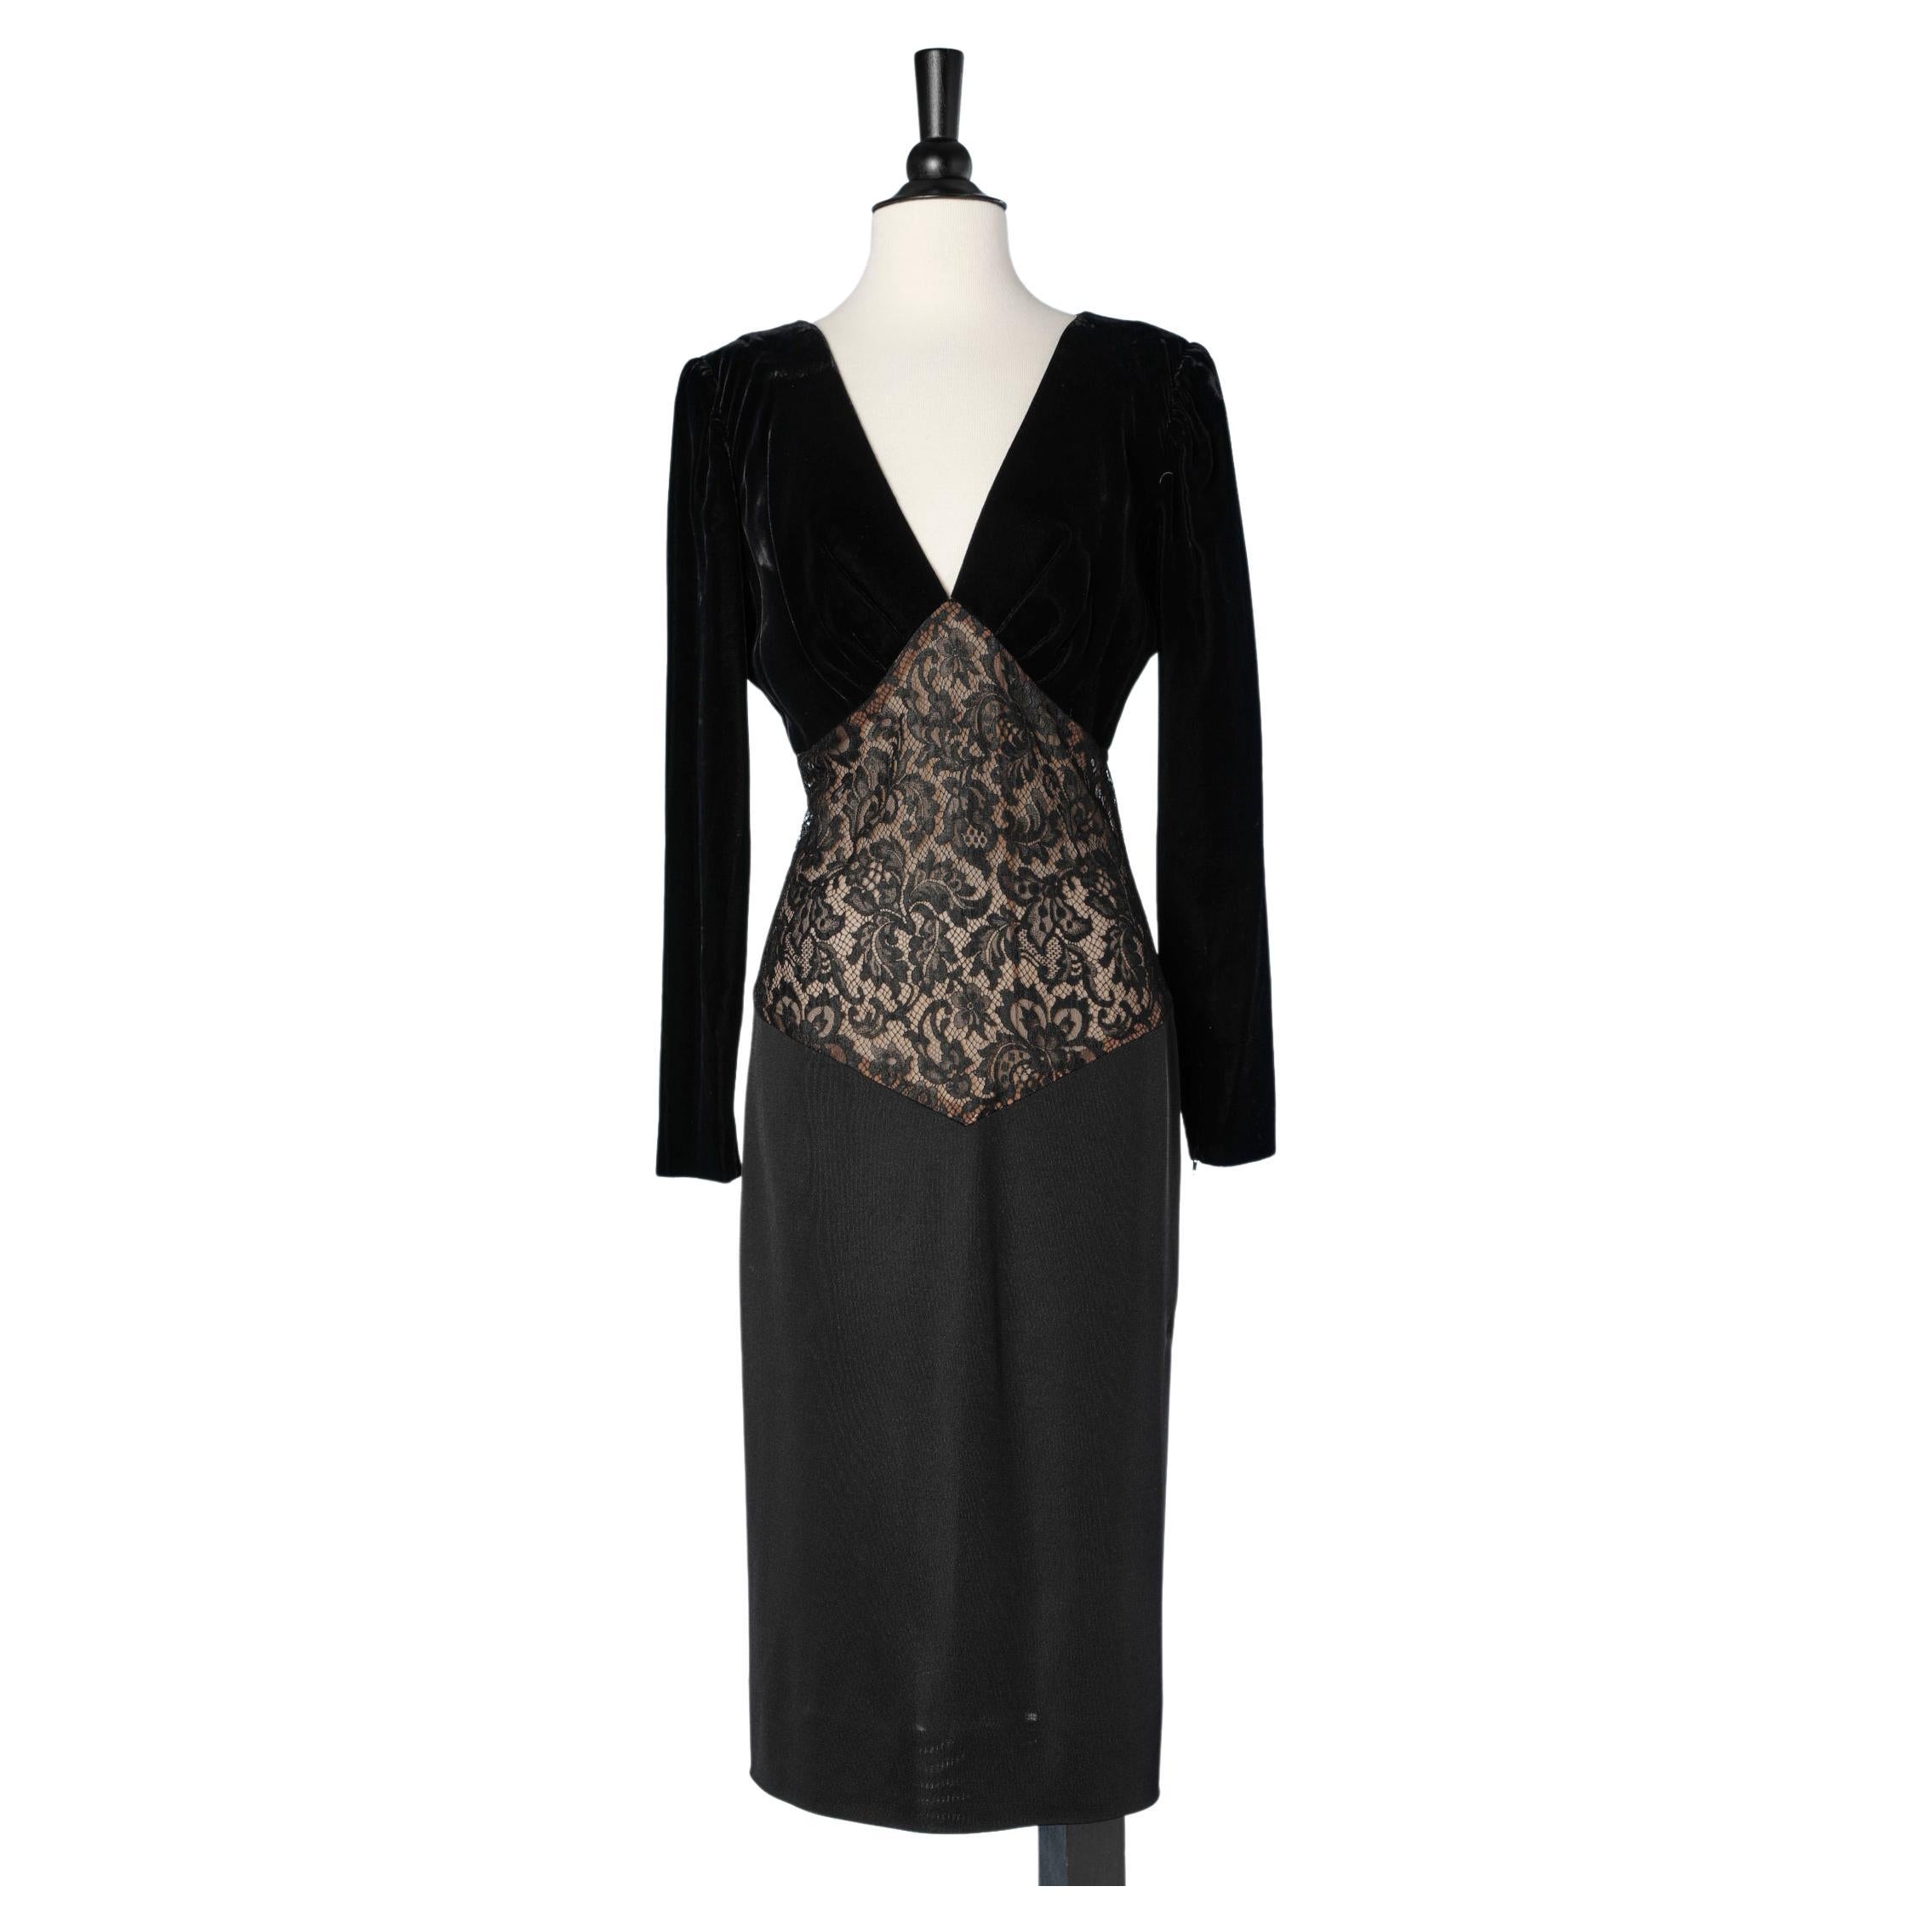 Velvet and lace black evening dress Yves Saint Laurent Rive Gauche 